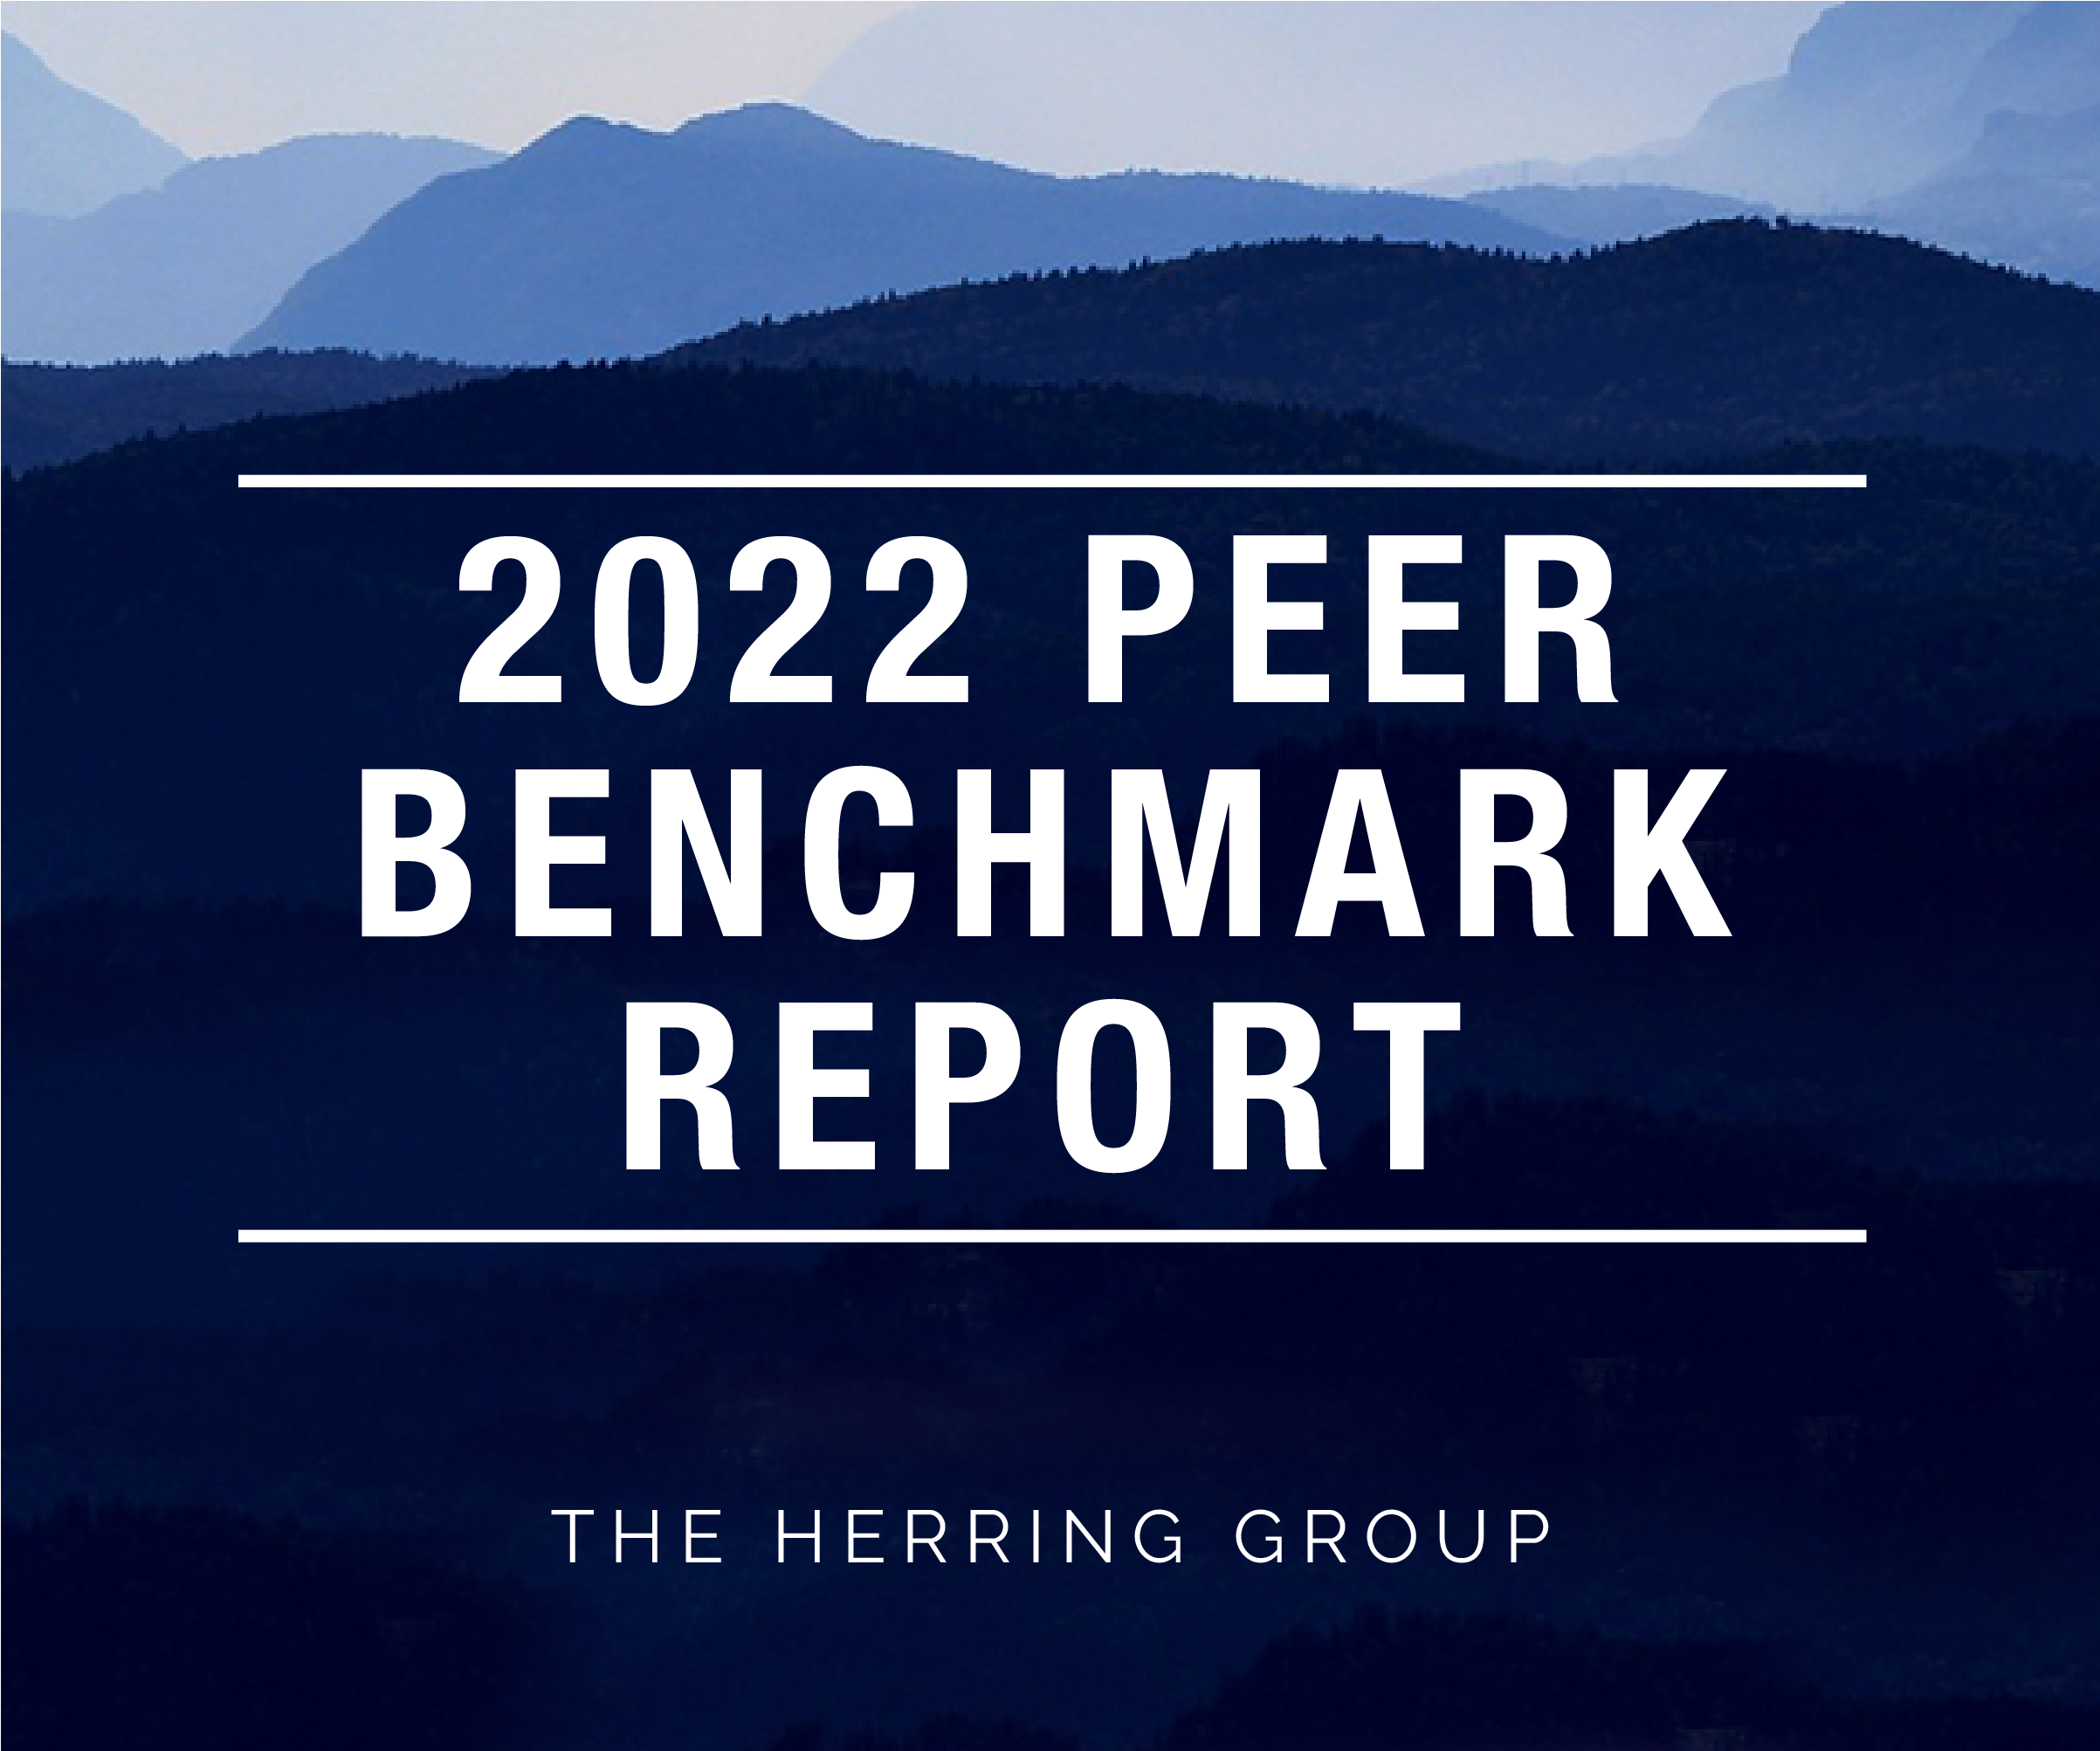 2022 Peer Benchmark Report